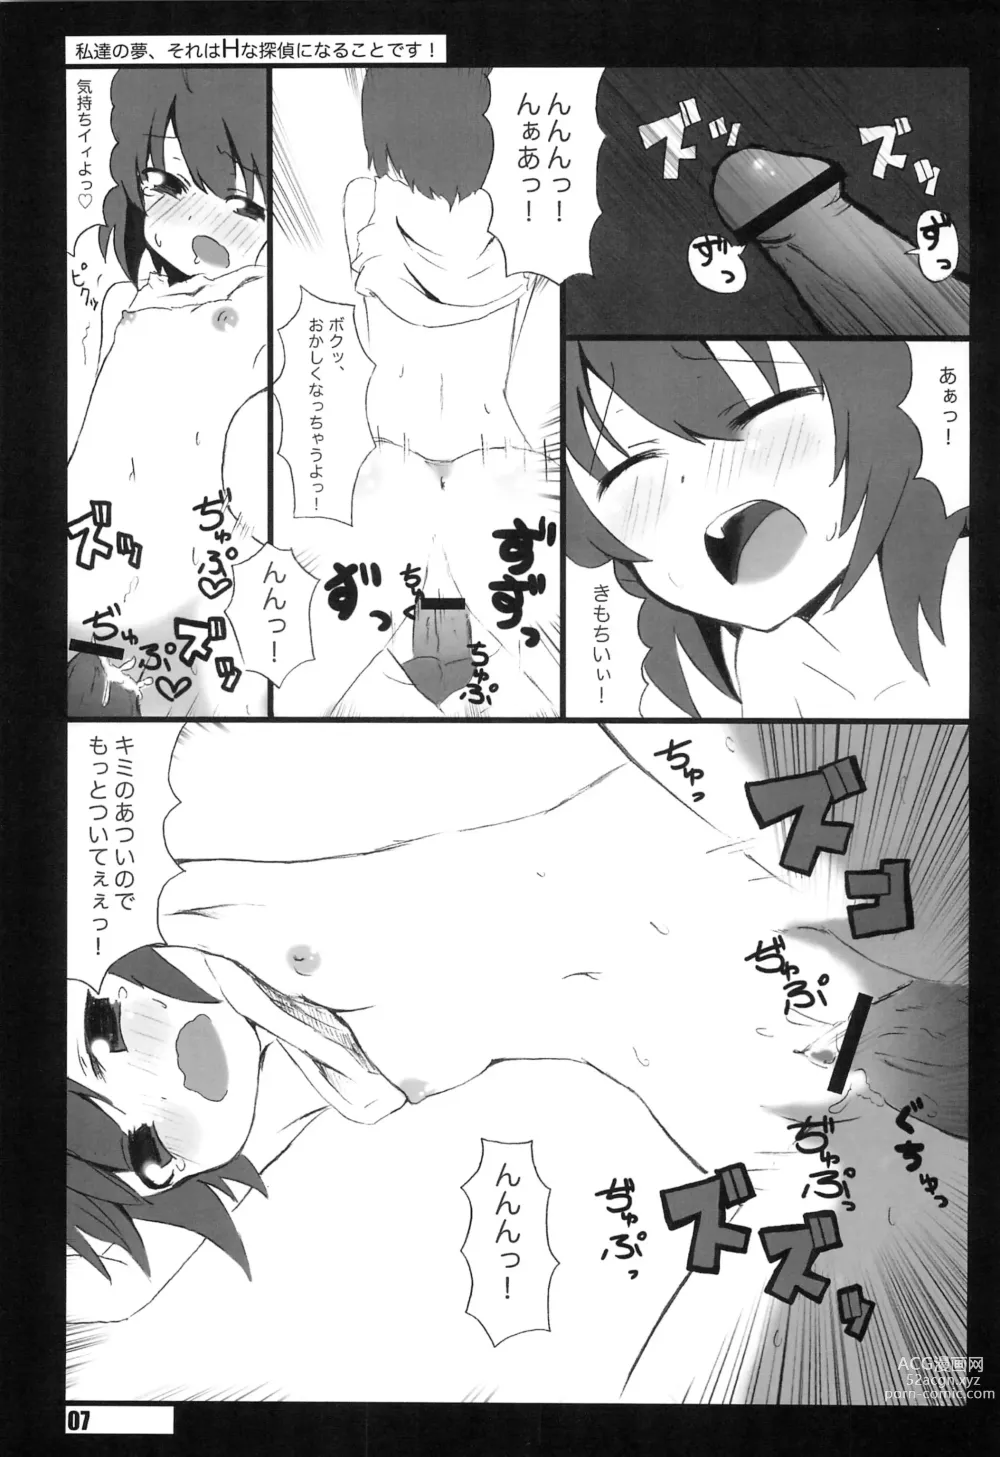 Page 7 of doujinshi Watashi-tachi no Yume, Sore wa H na Tantei ni naru koto desu.